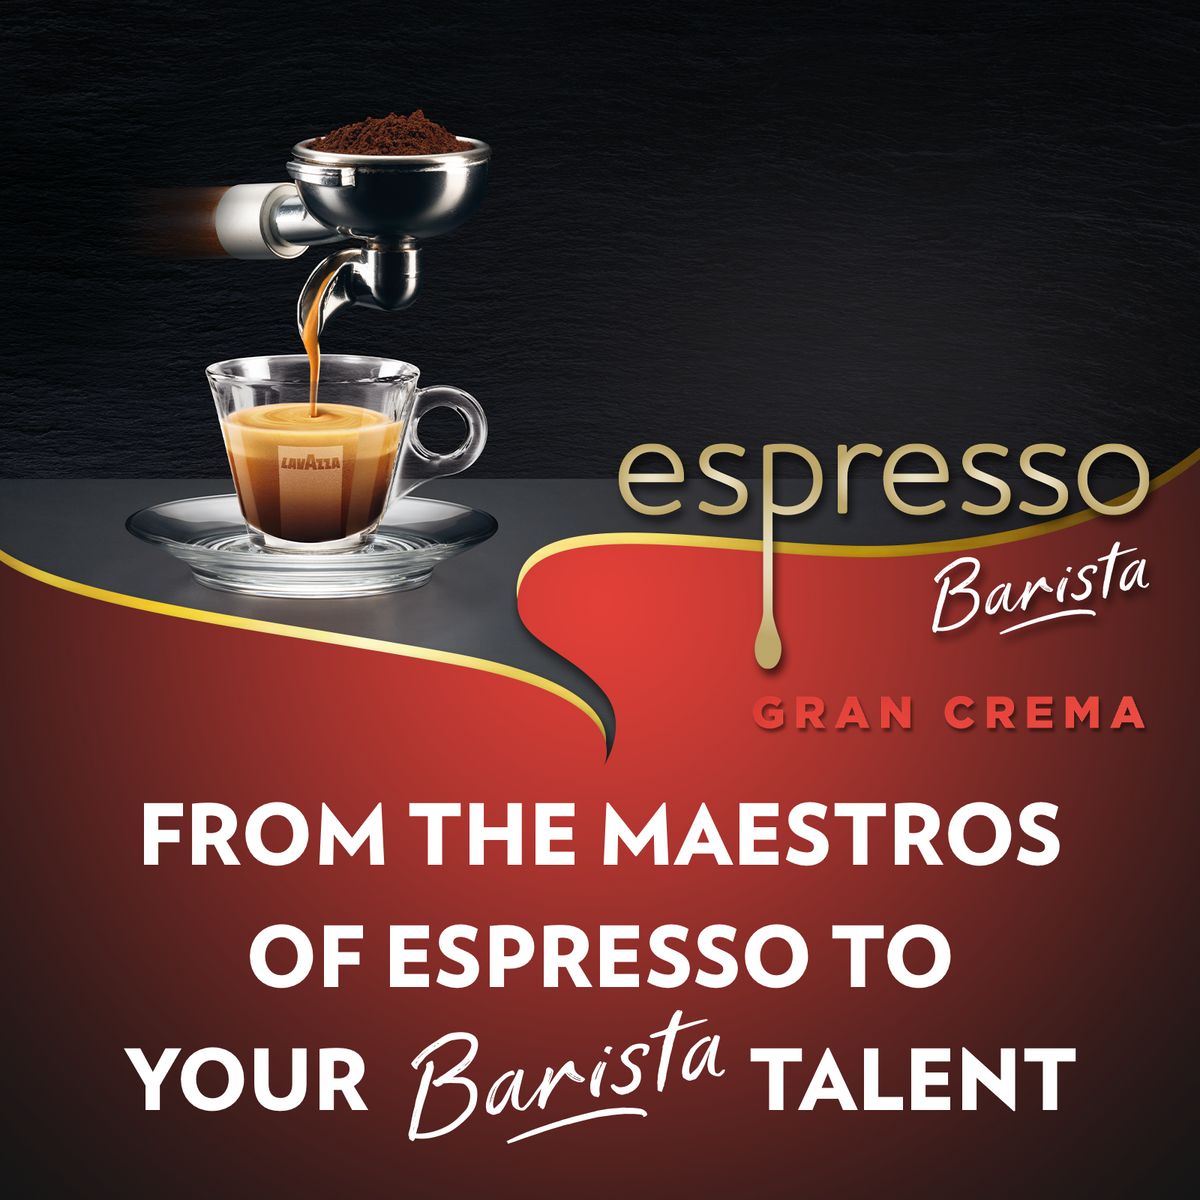 Lavazza Super Crema Whole Bean Espresso Coffee, 2.2 LB Bag - Exp